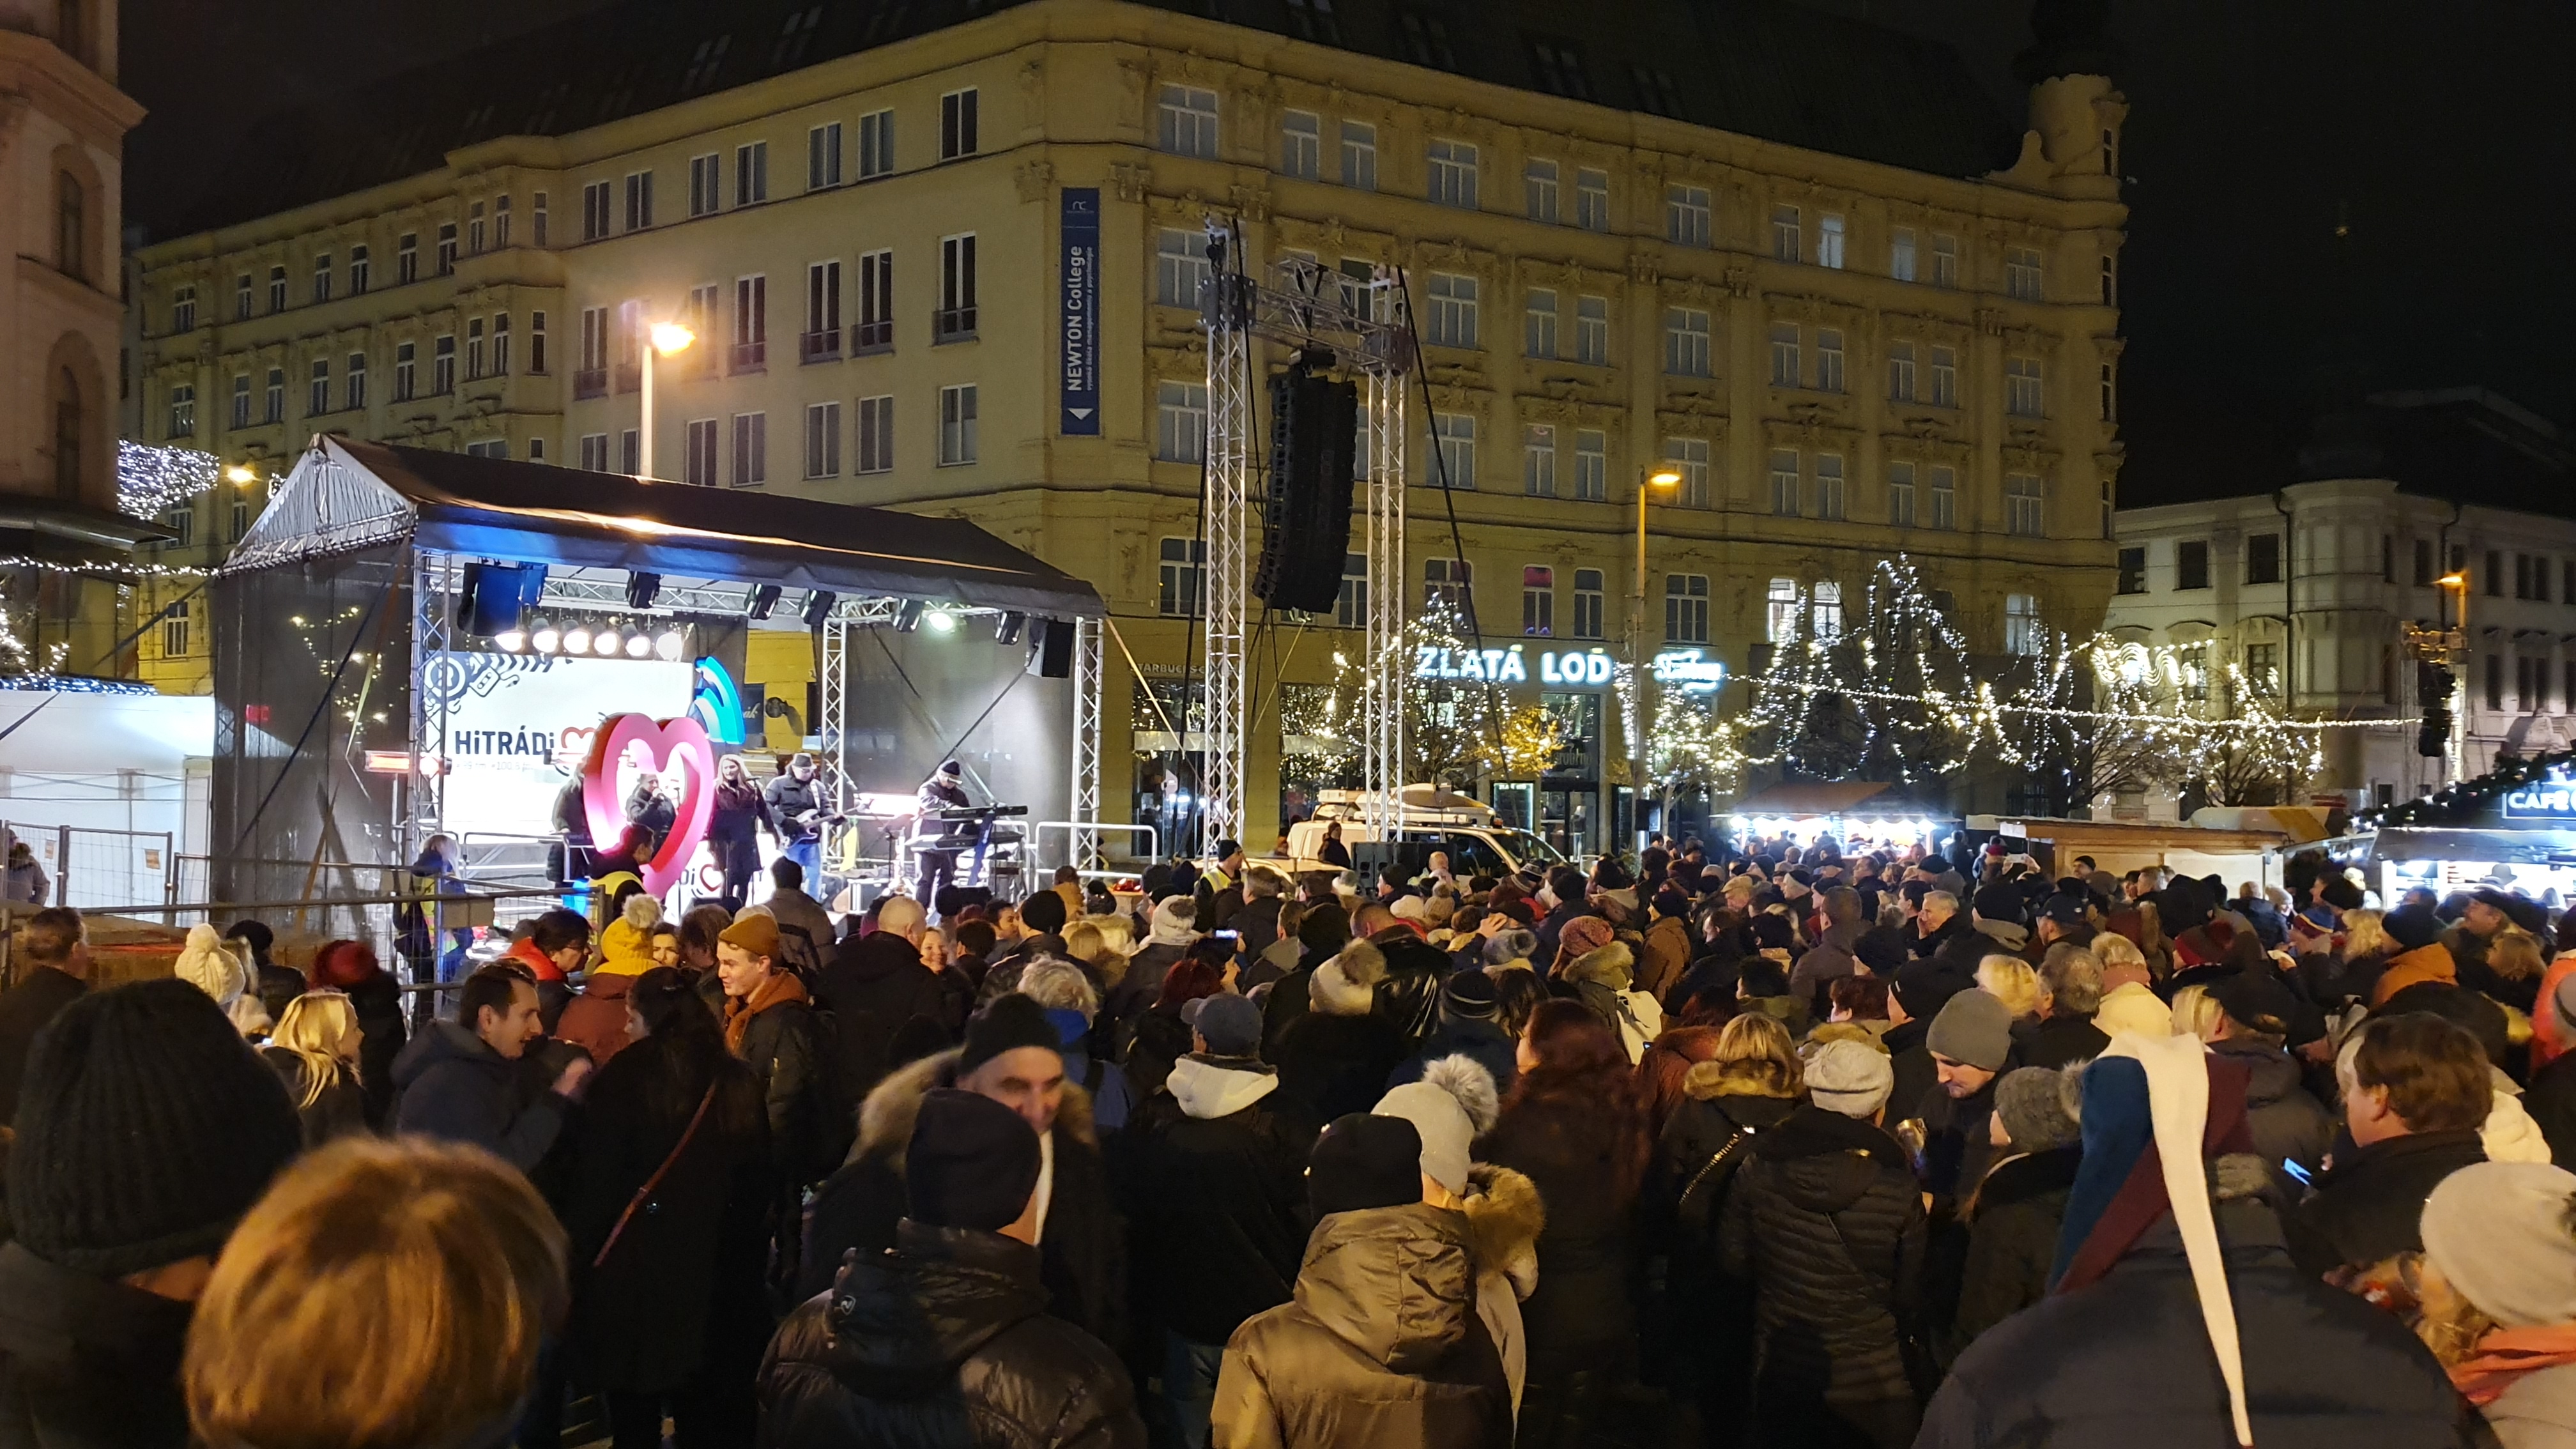 Novinka - Obrázek - Silvestr na náměstí Svobody